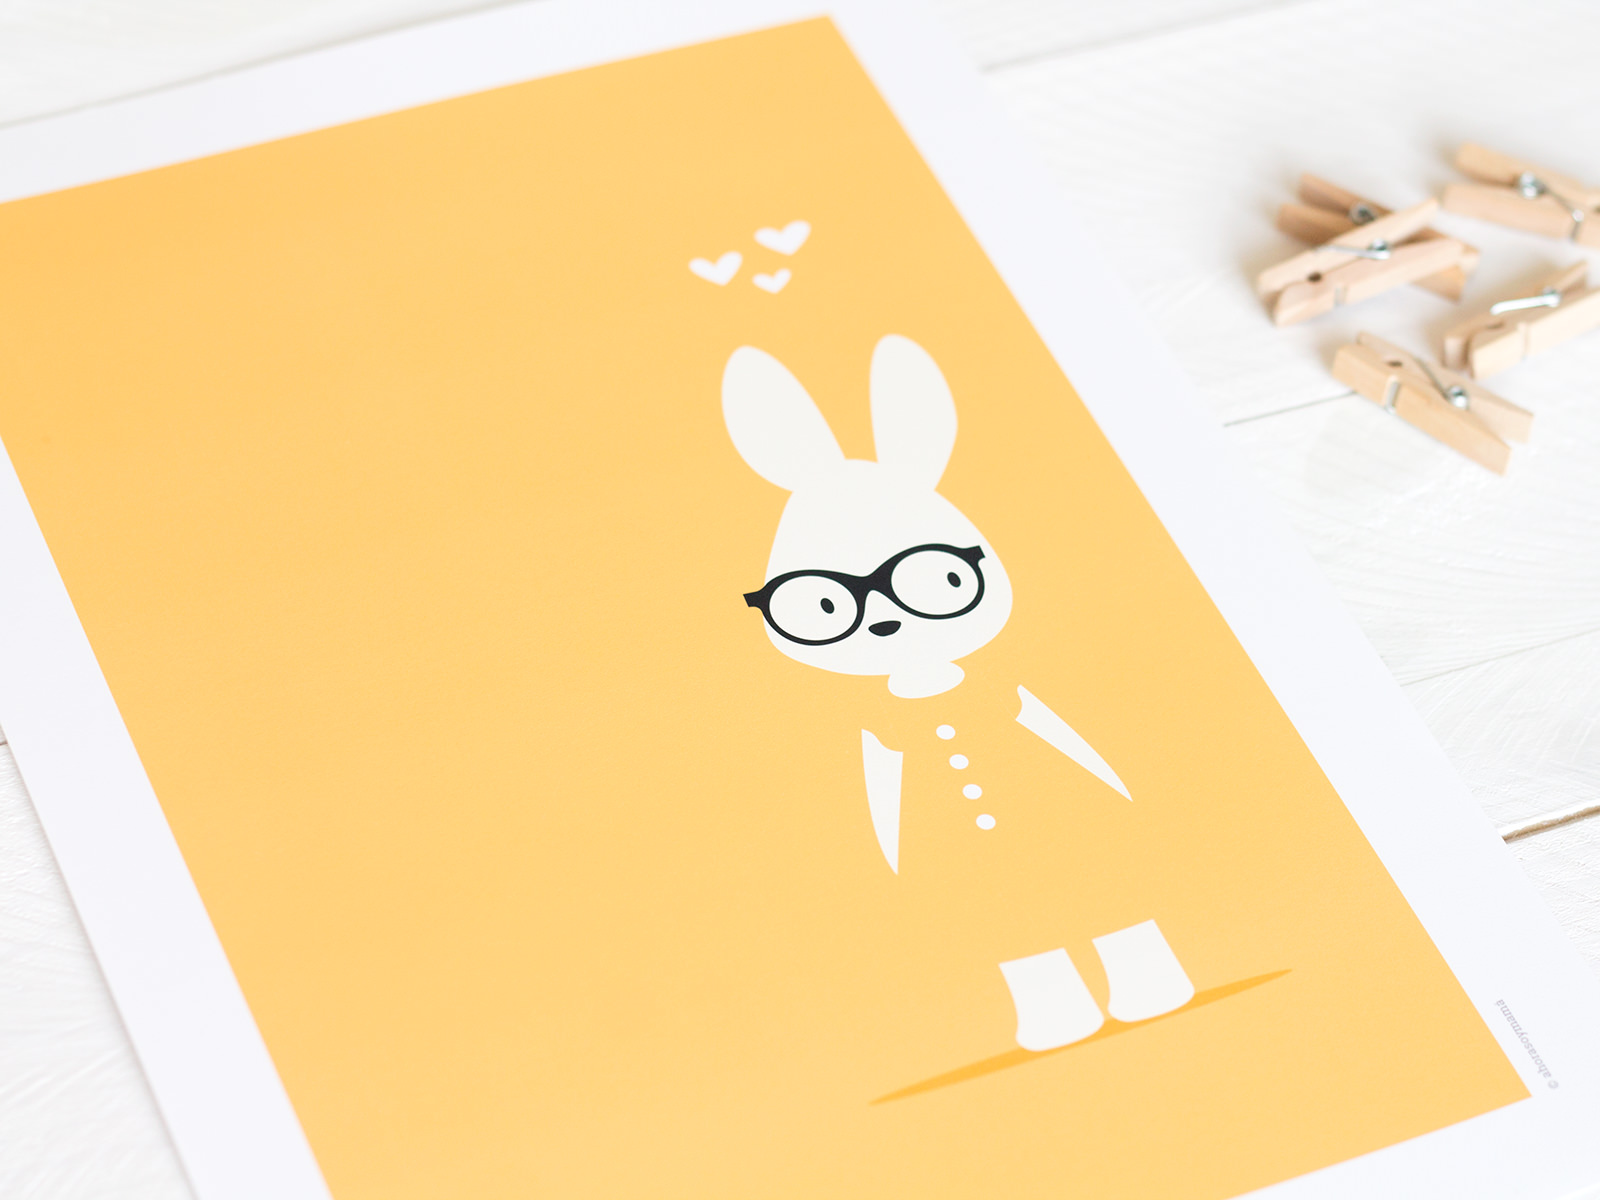 lamina conejo amarillo 1 - Lámina conejo con gafas, color amarillo